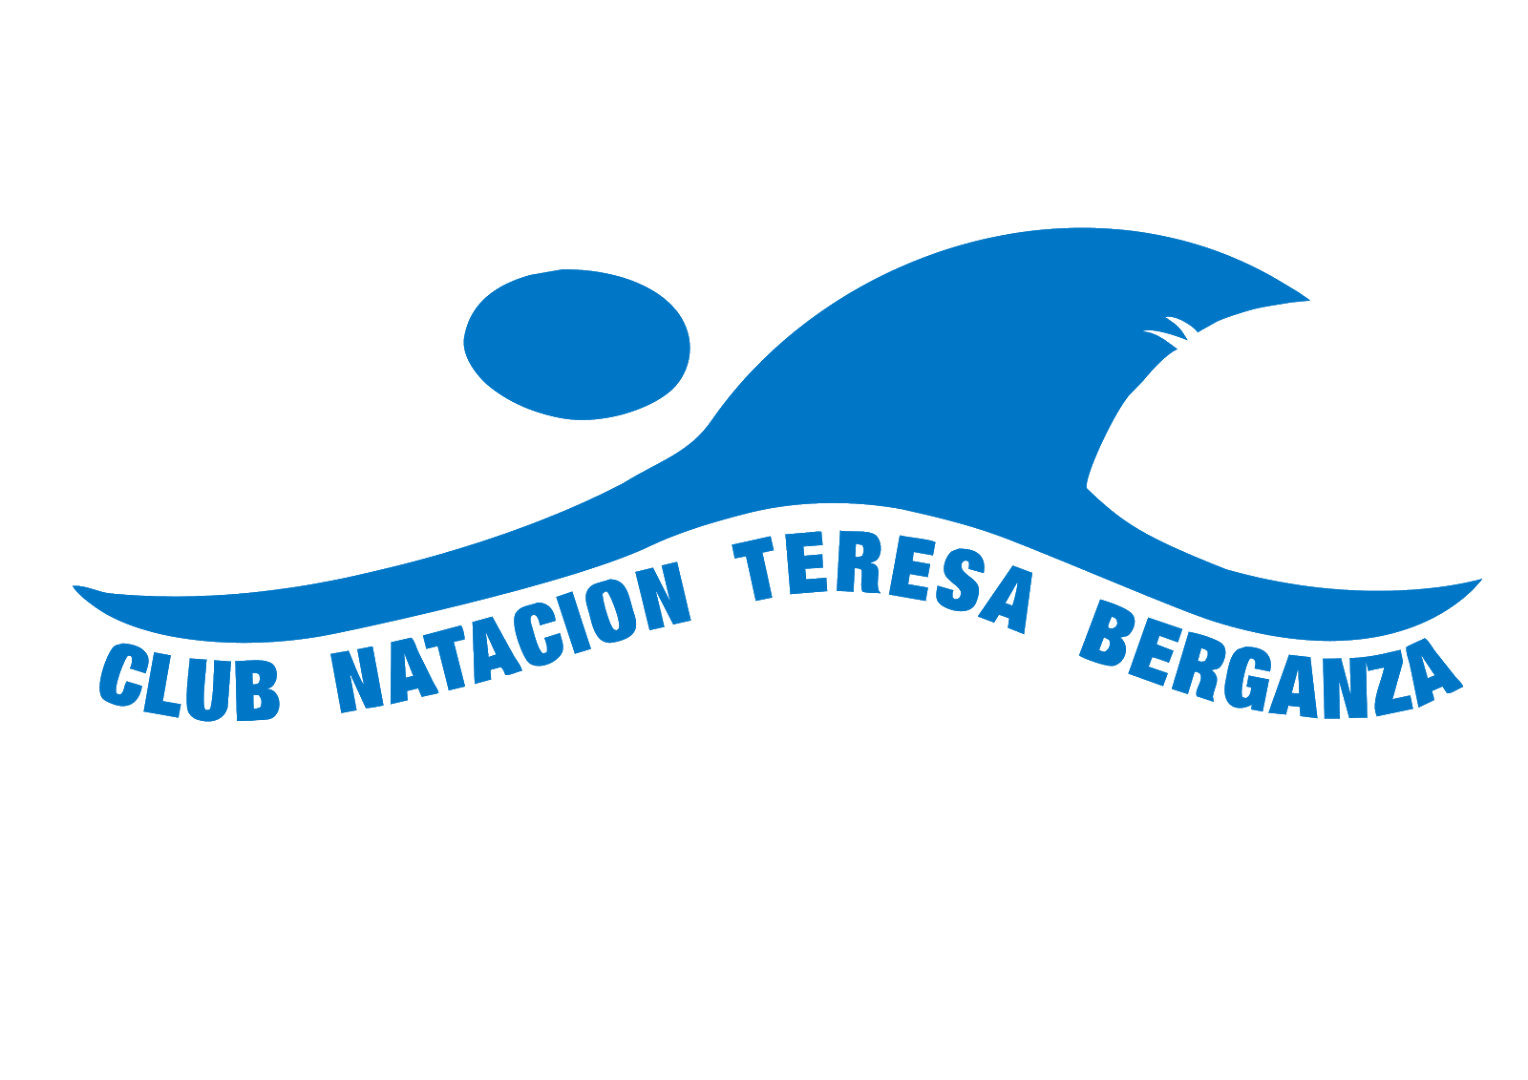 Club Natación Teresa Berganza